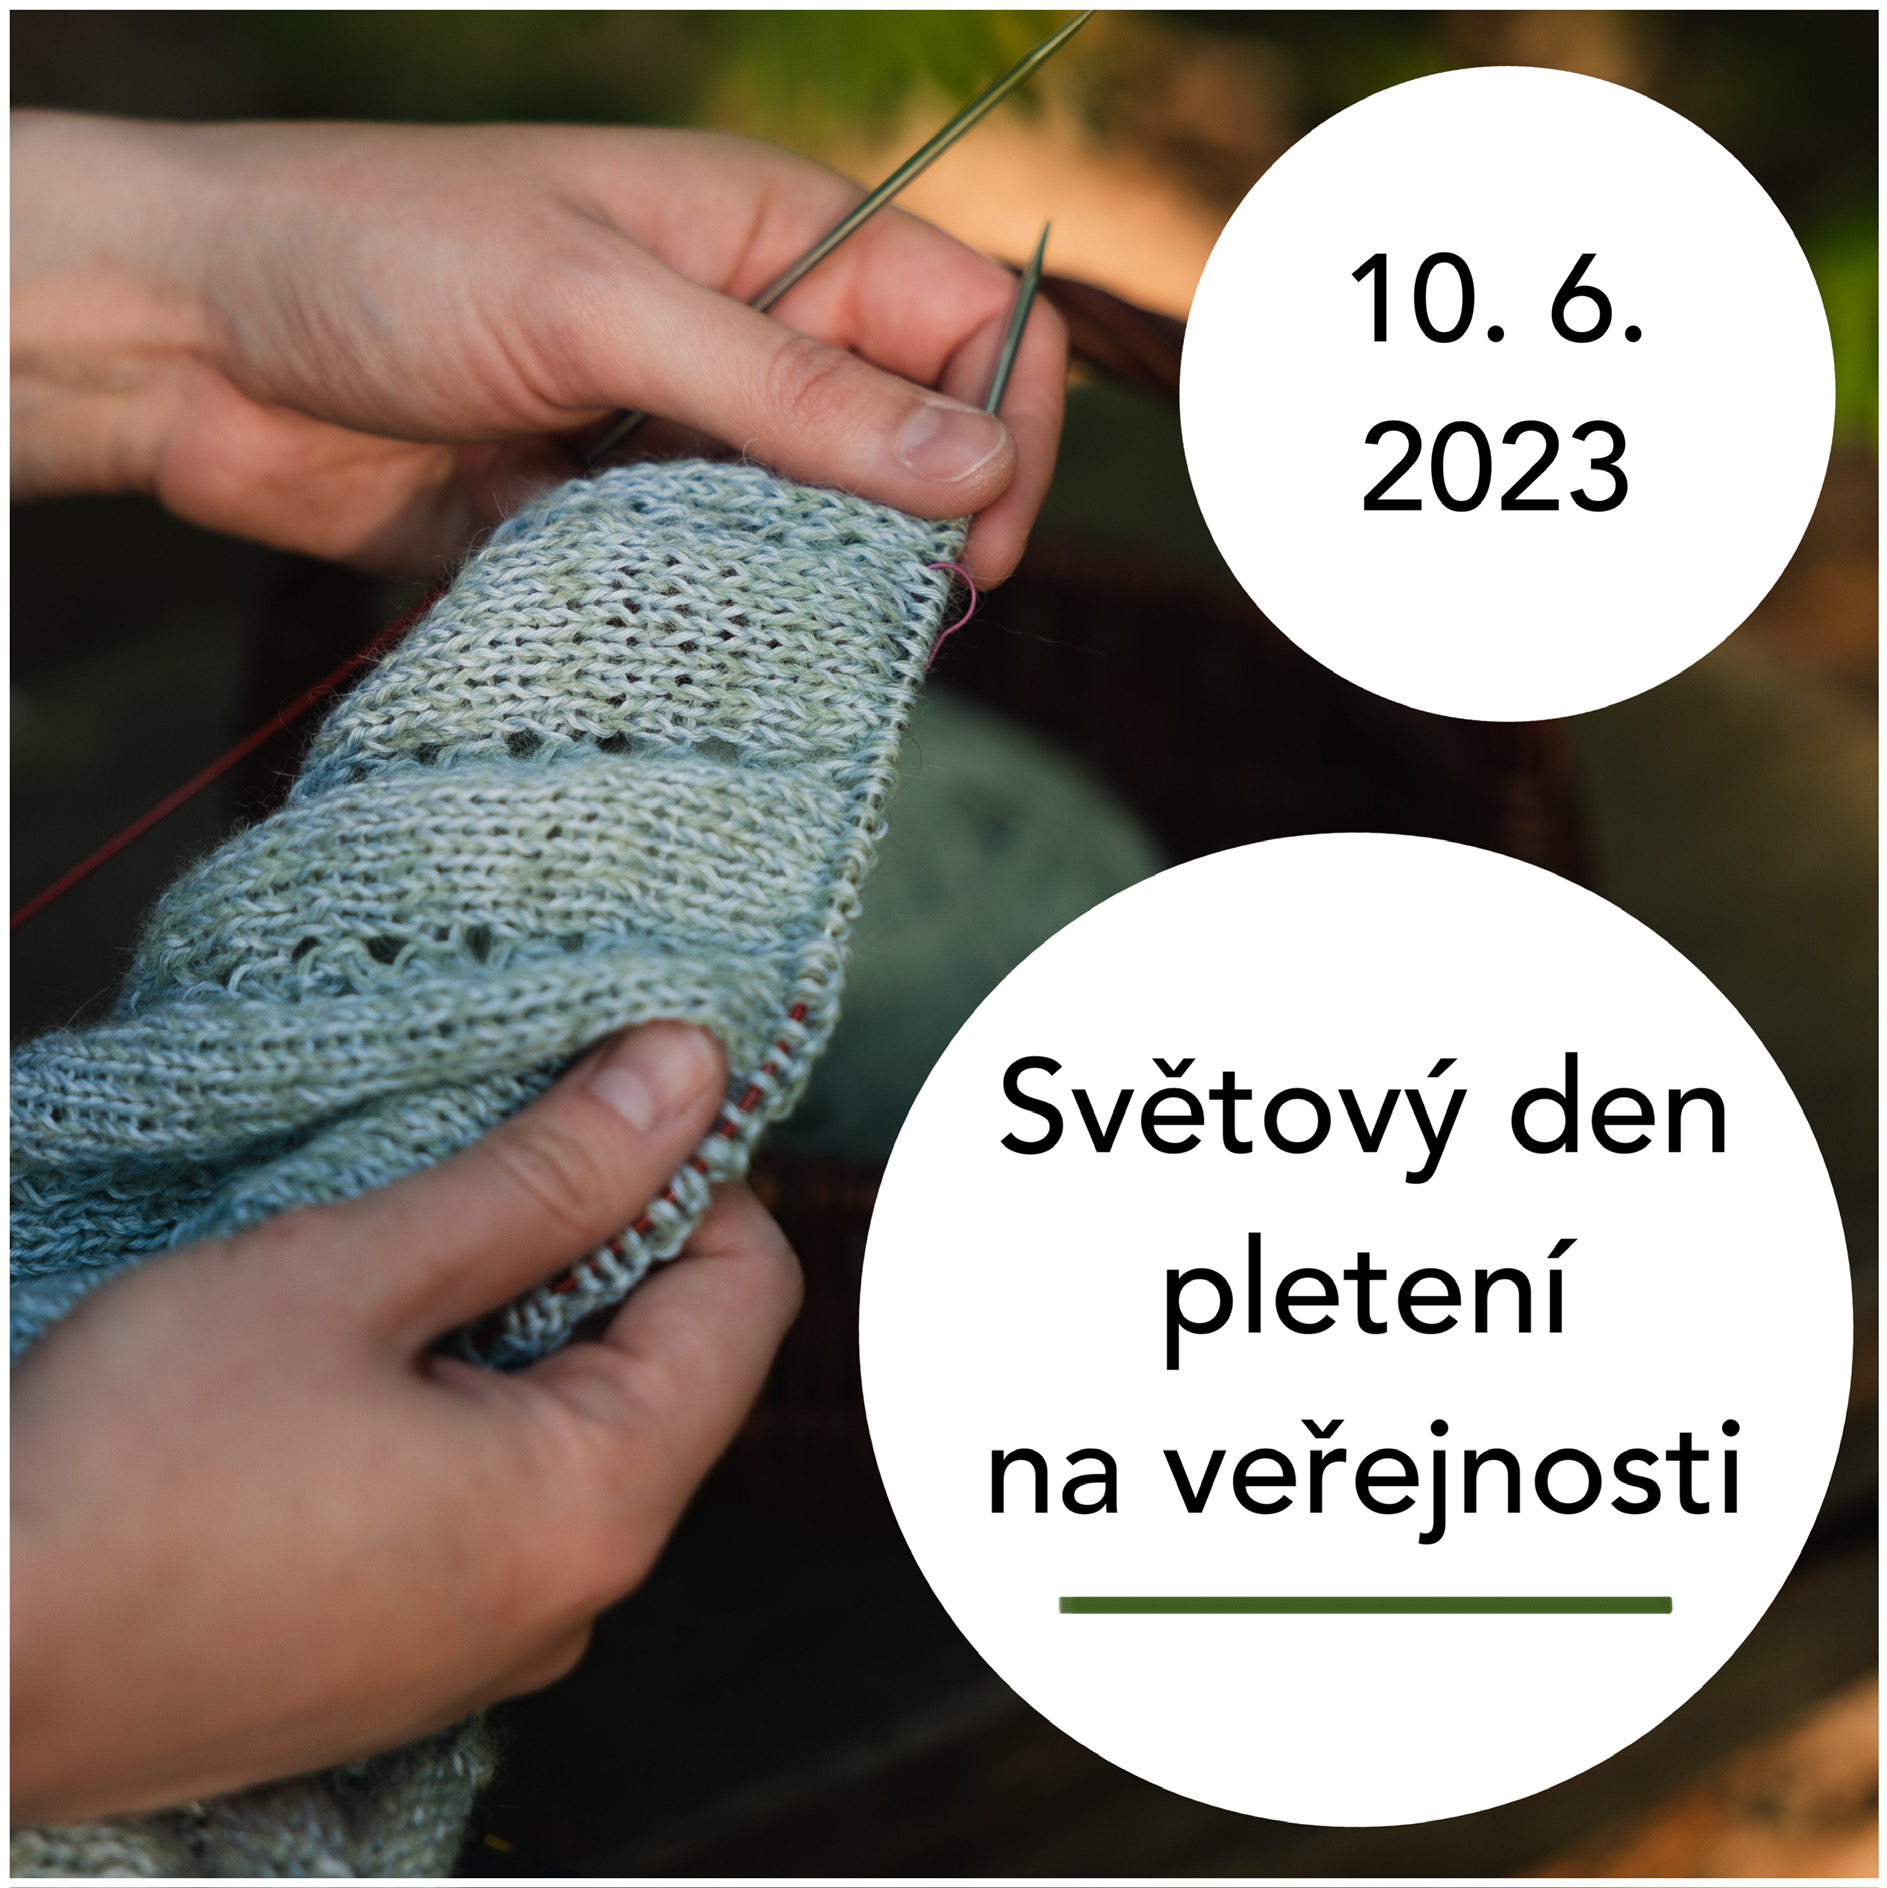 Světový den pletení na veřejnosti 10.6.2023